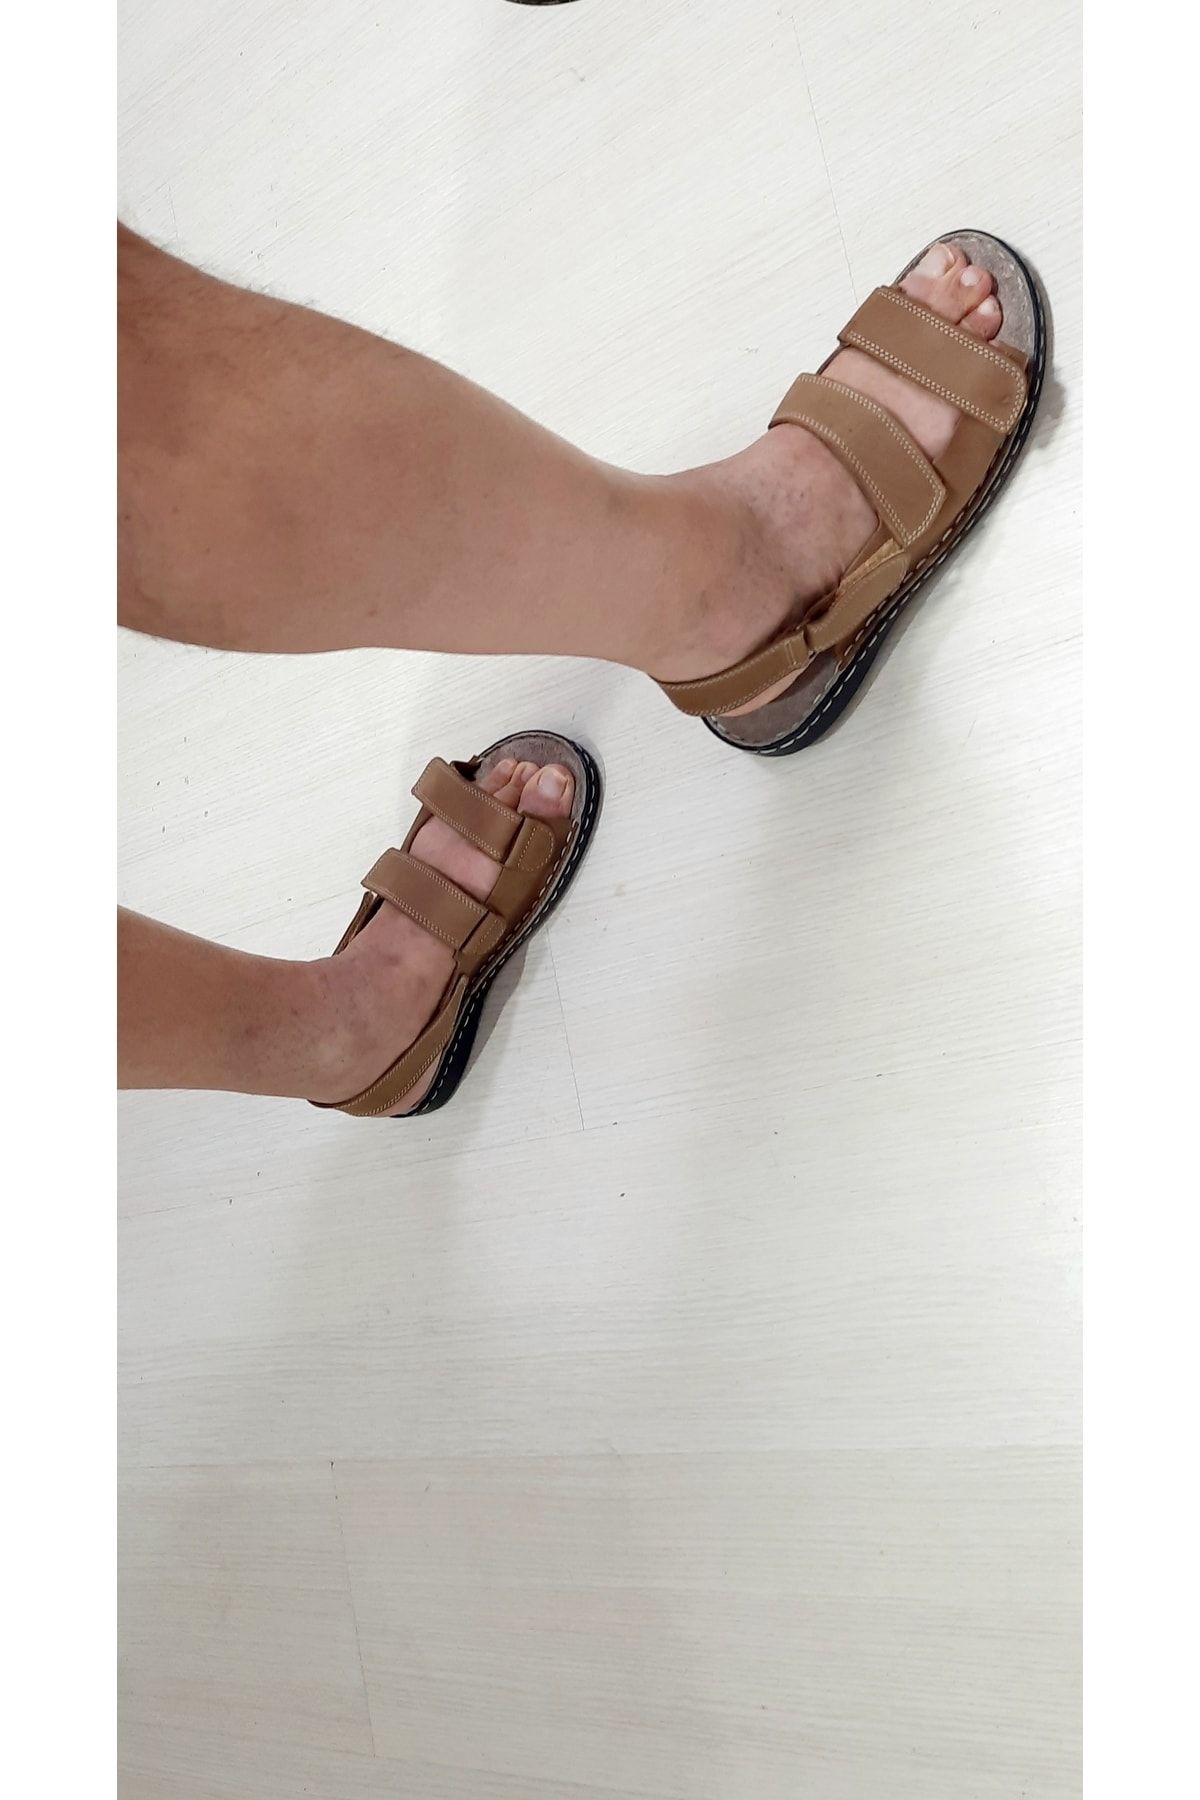 KAPAR Hakiki Dana Derisinden Üç Cırtlı Açık Kahve Rengi Sandalet